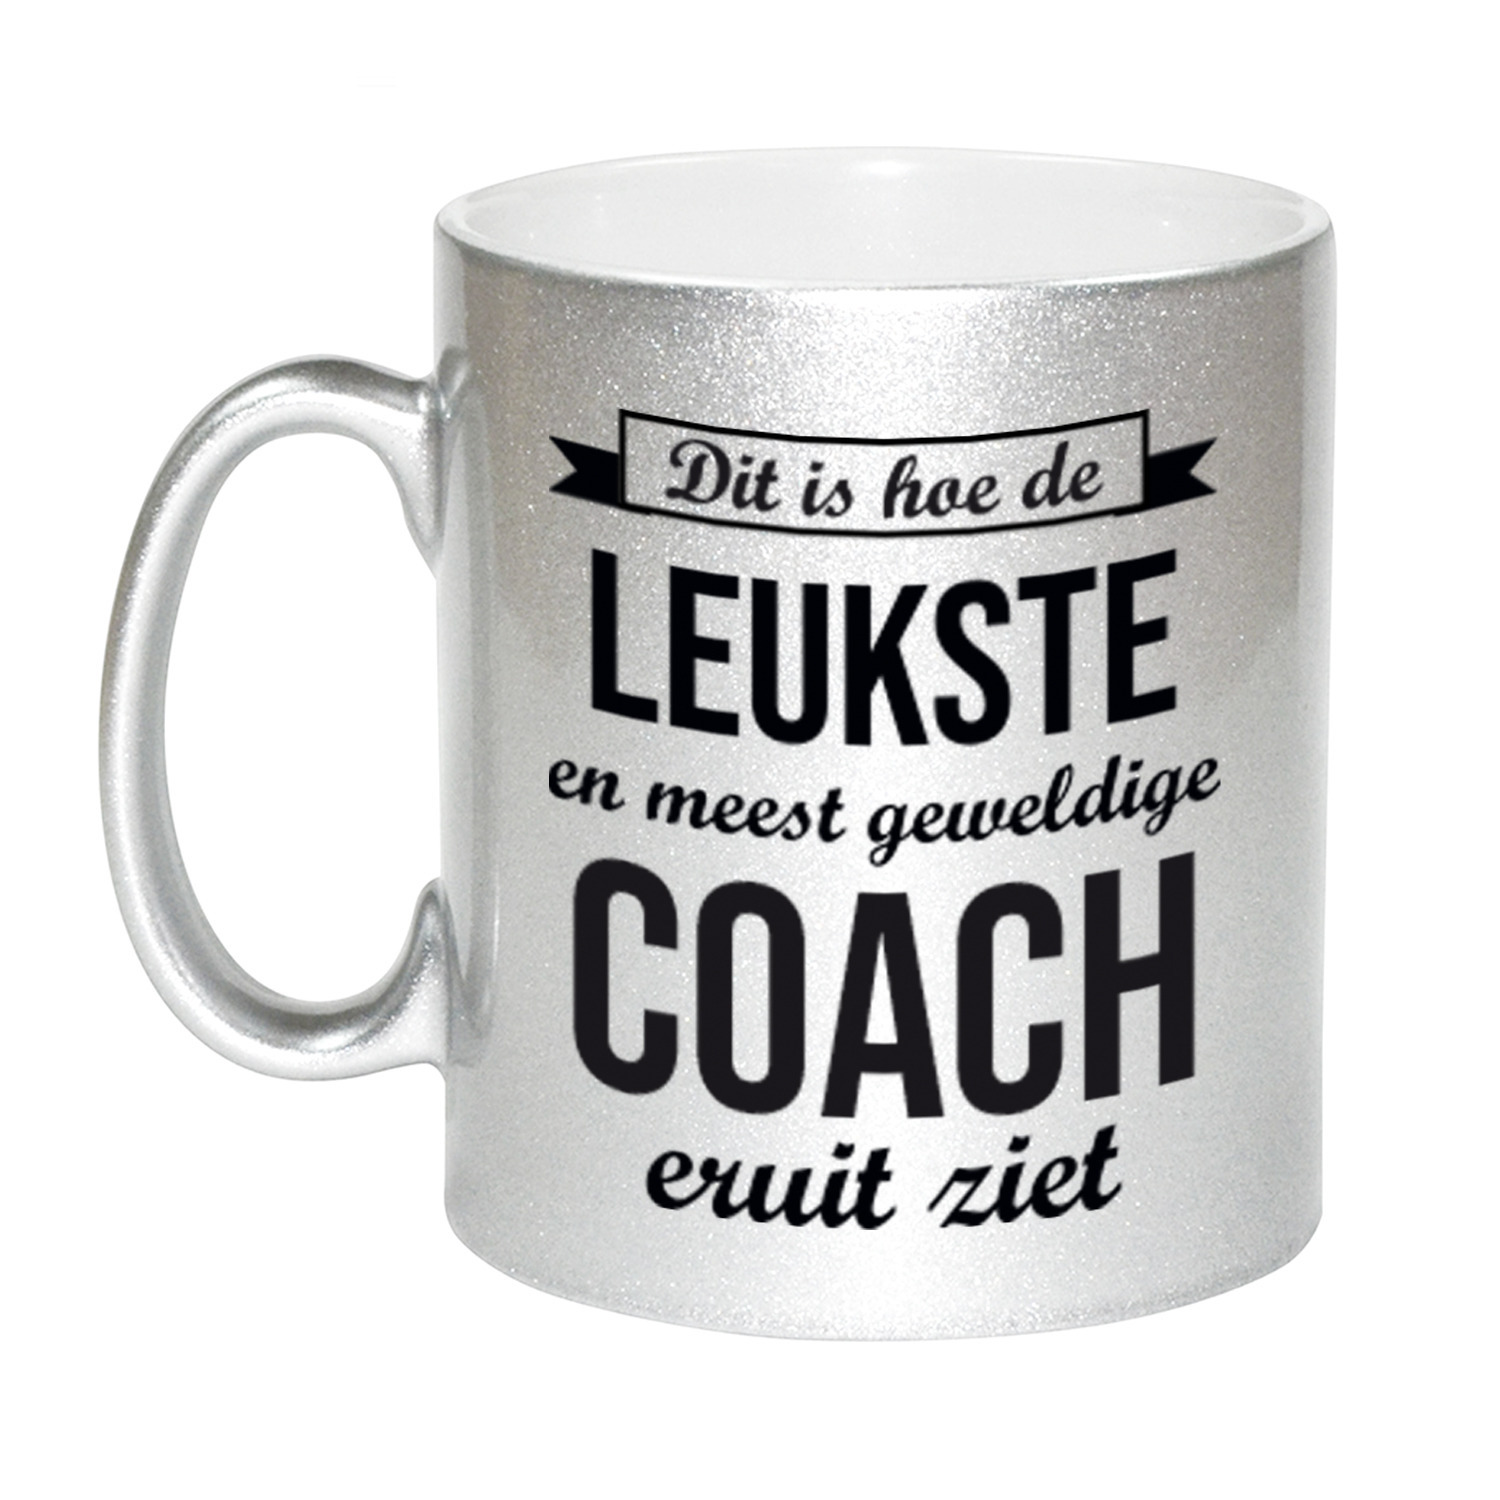 Zilveren leukste en meest geweldige coach cadeau koffiemok / theebeker 330 ml